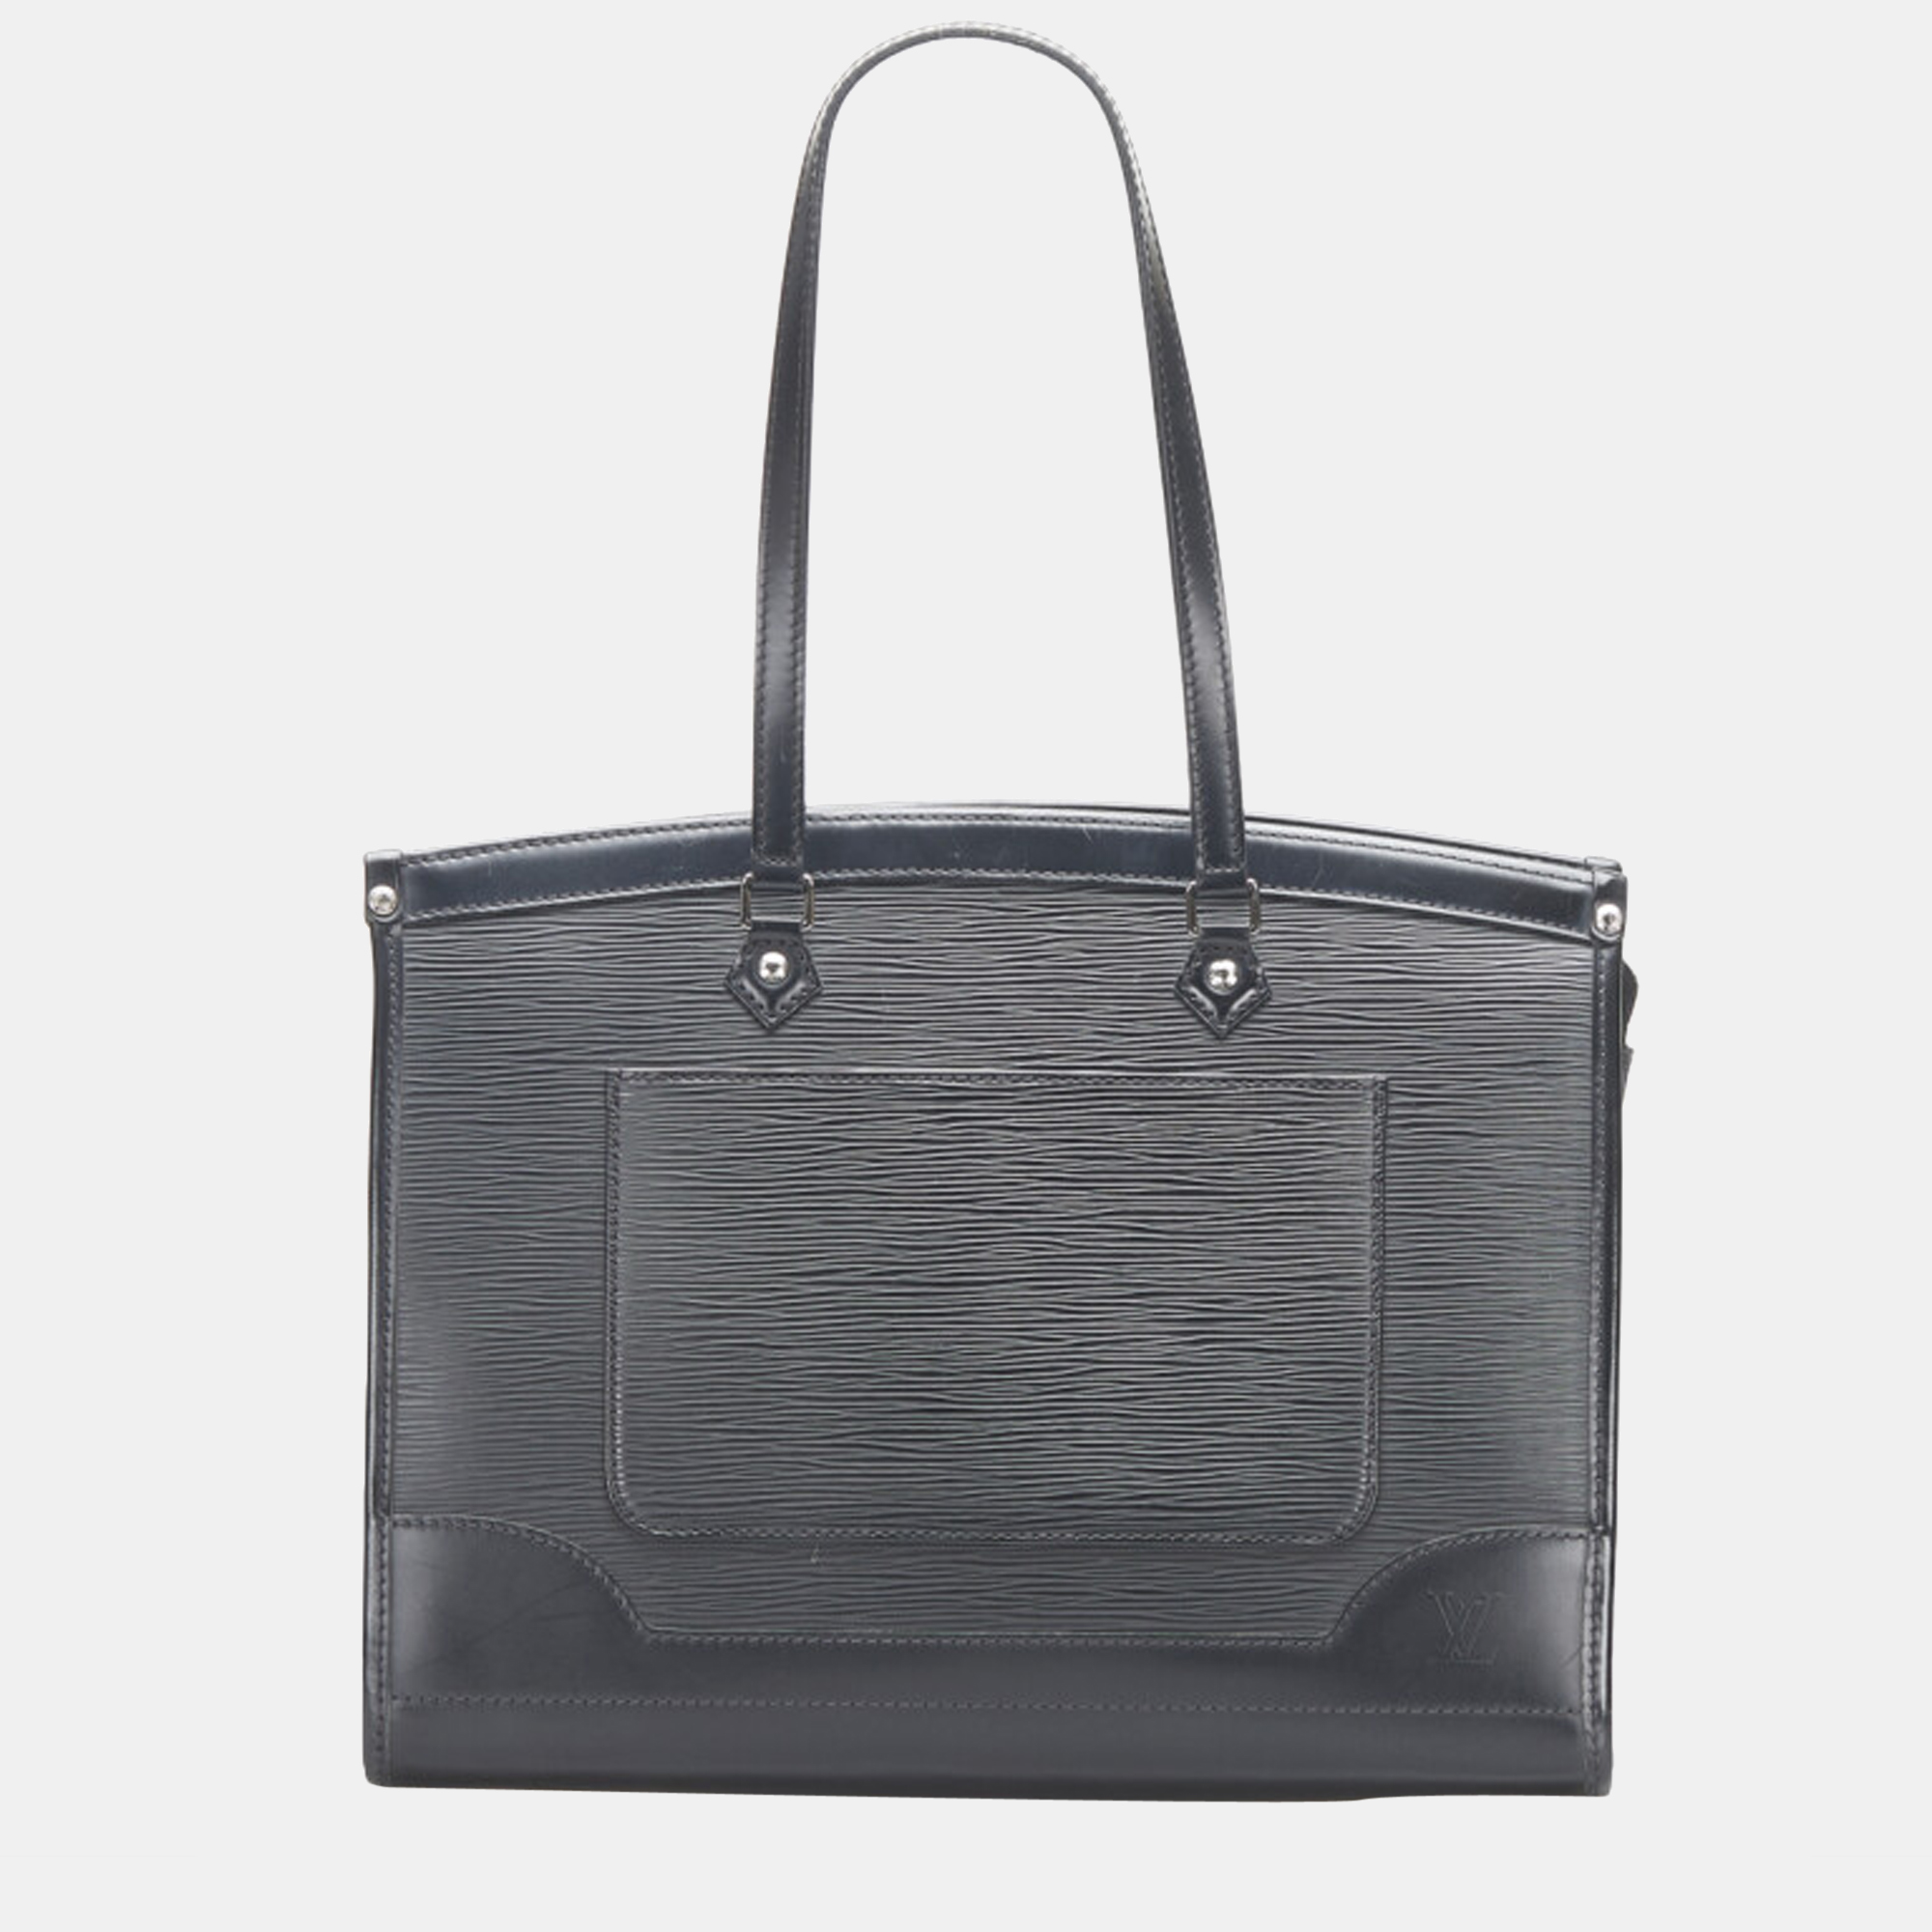 Buy Louis Vuitton Pre-Loved Black Shoulder Bag in Epi Leather for